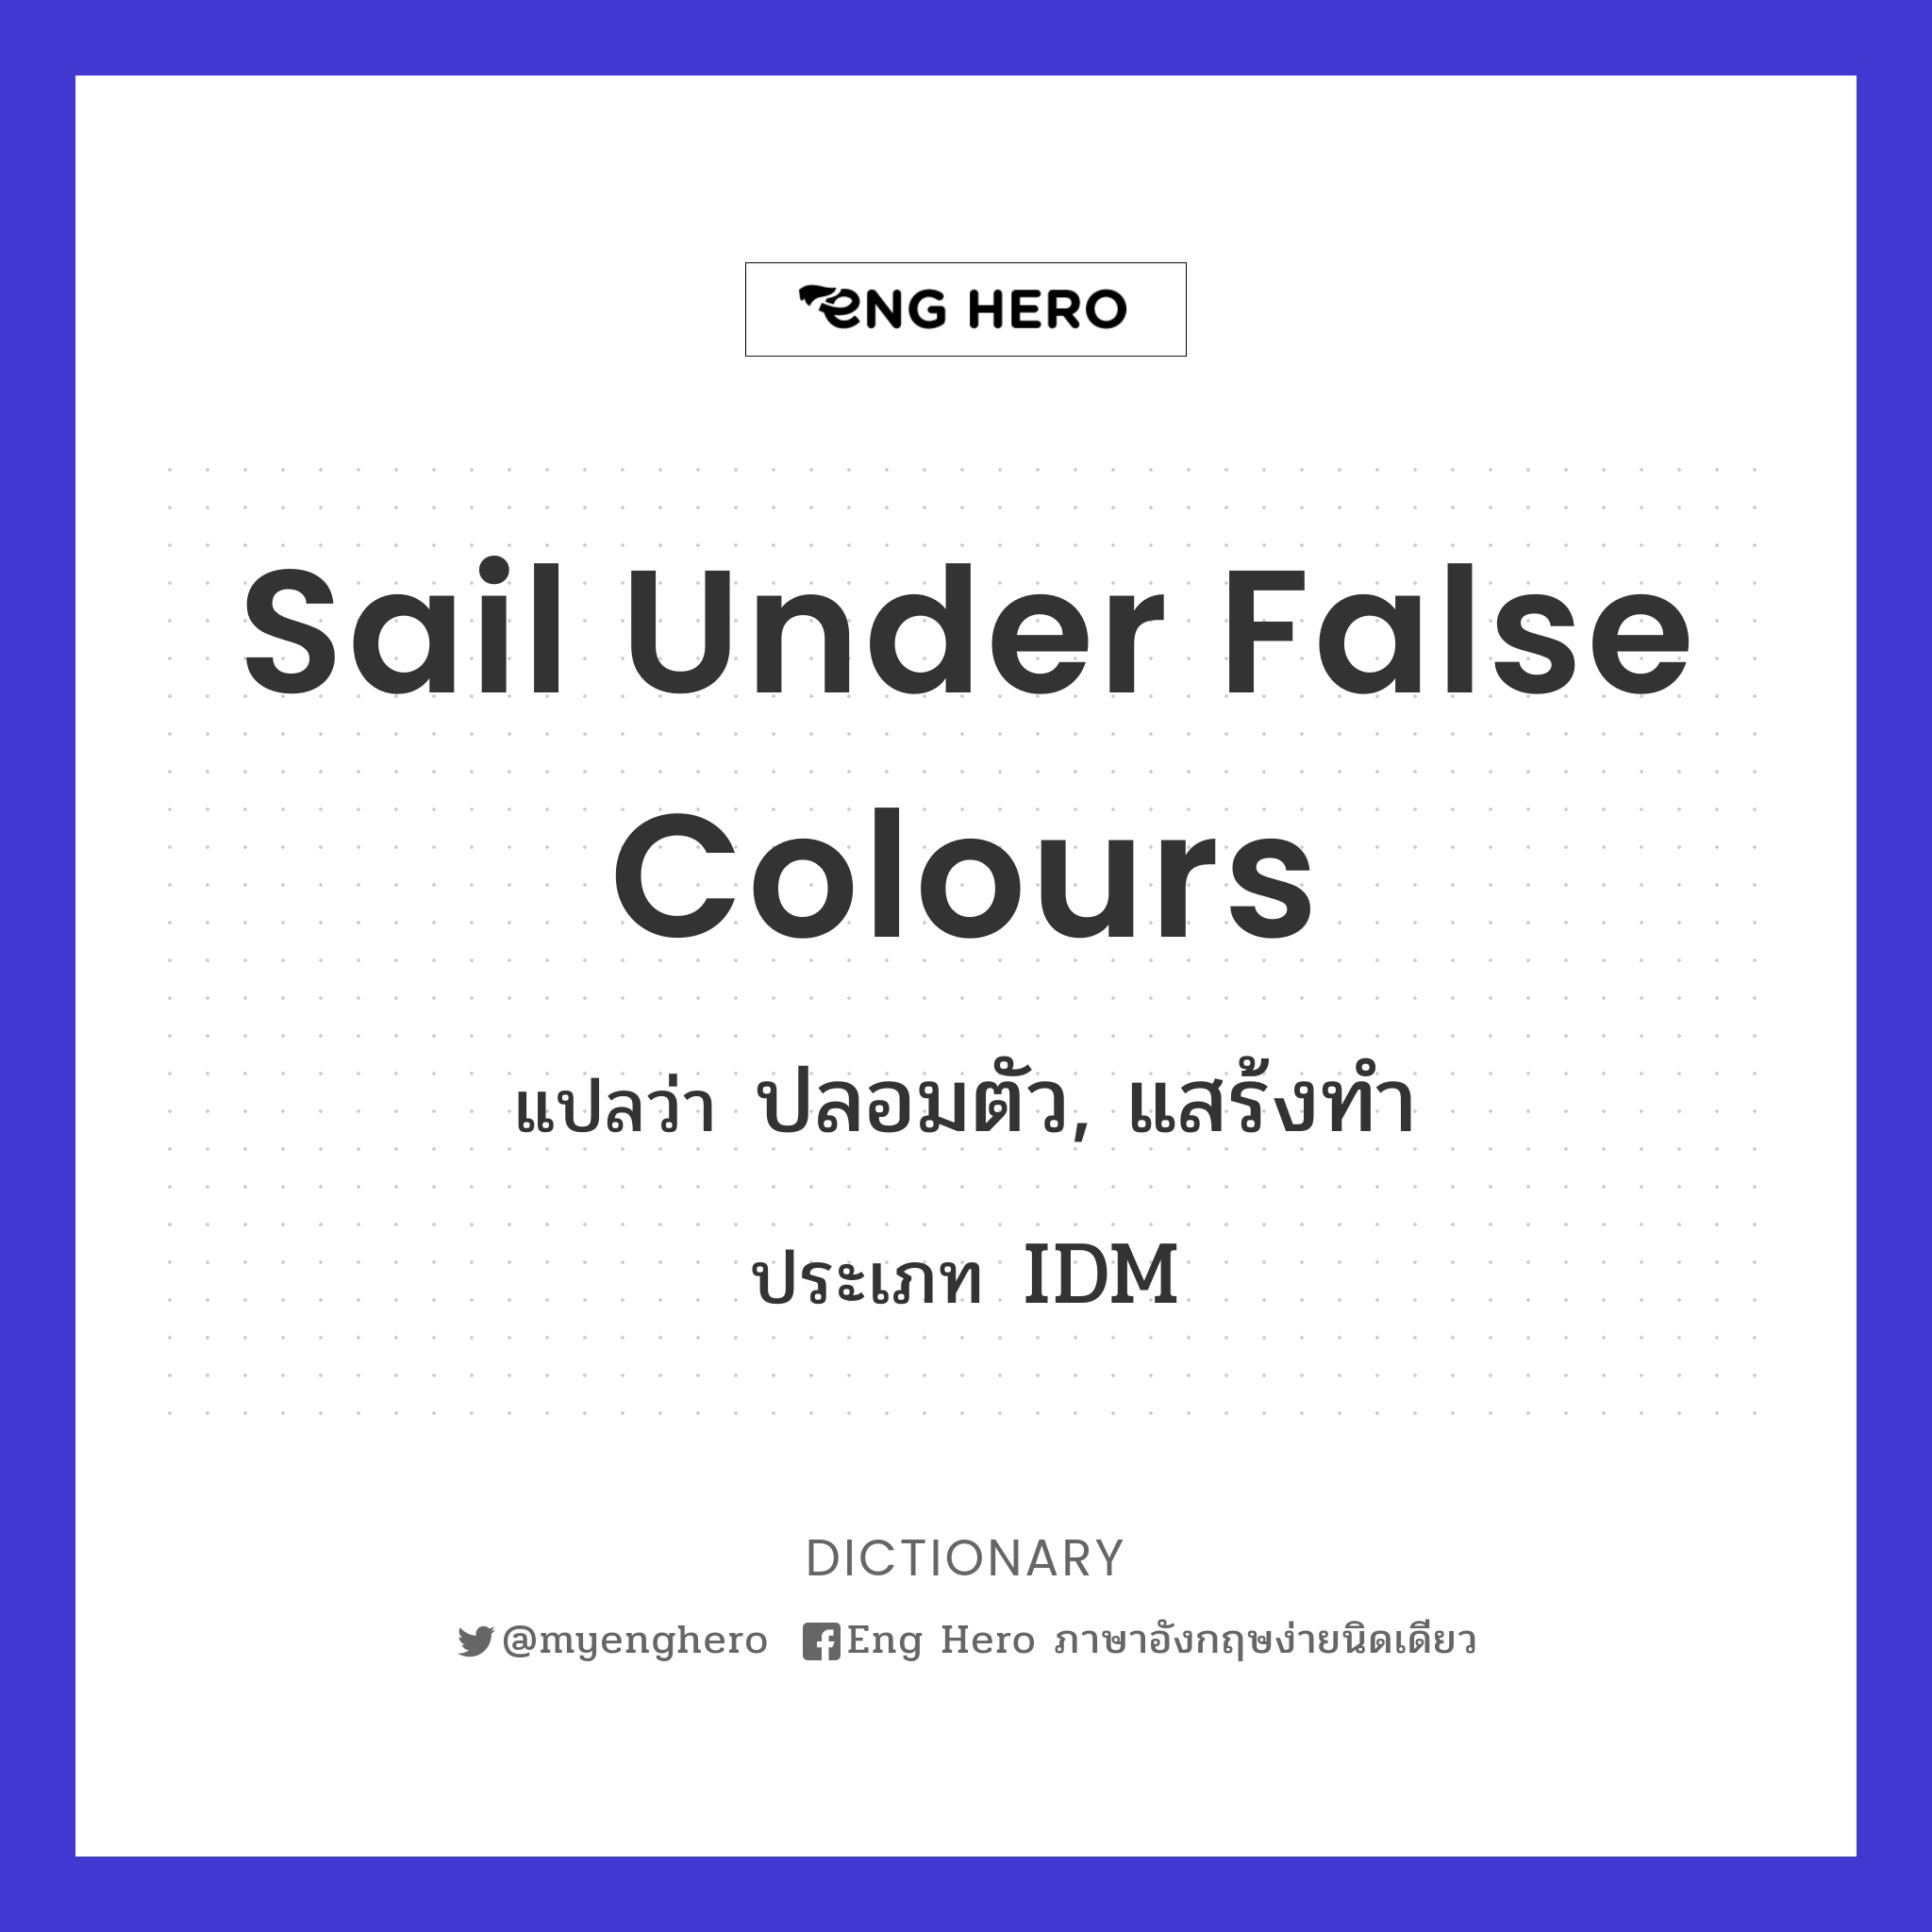 sail under false colours